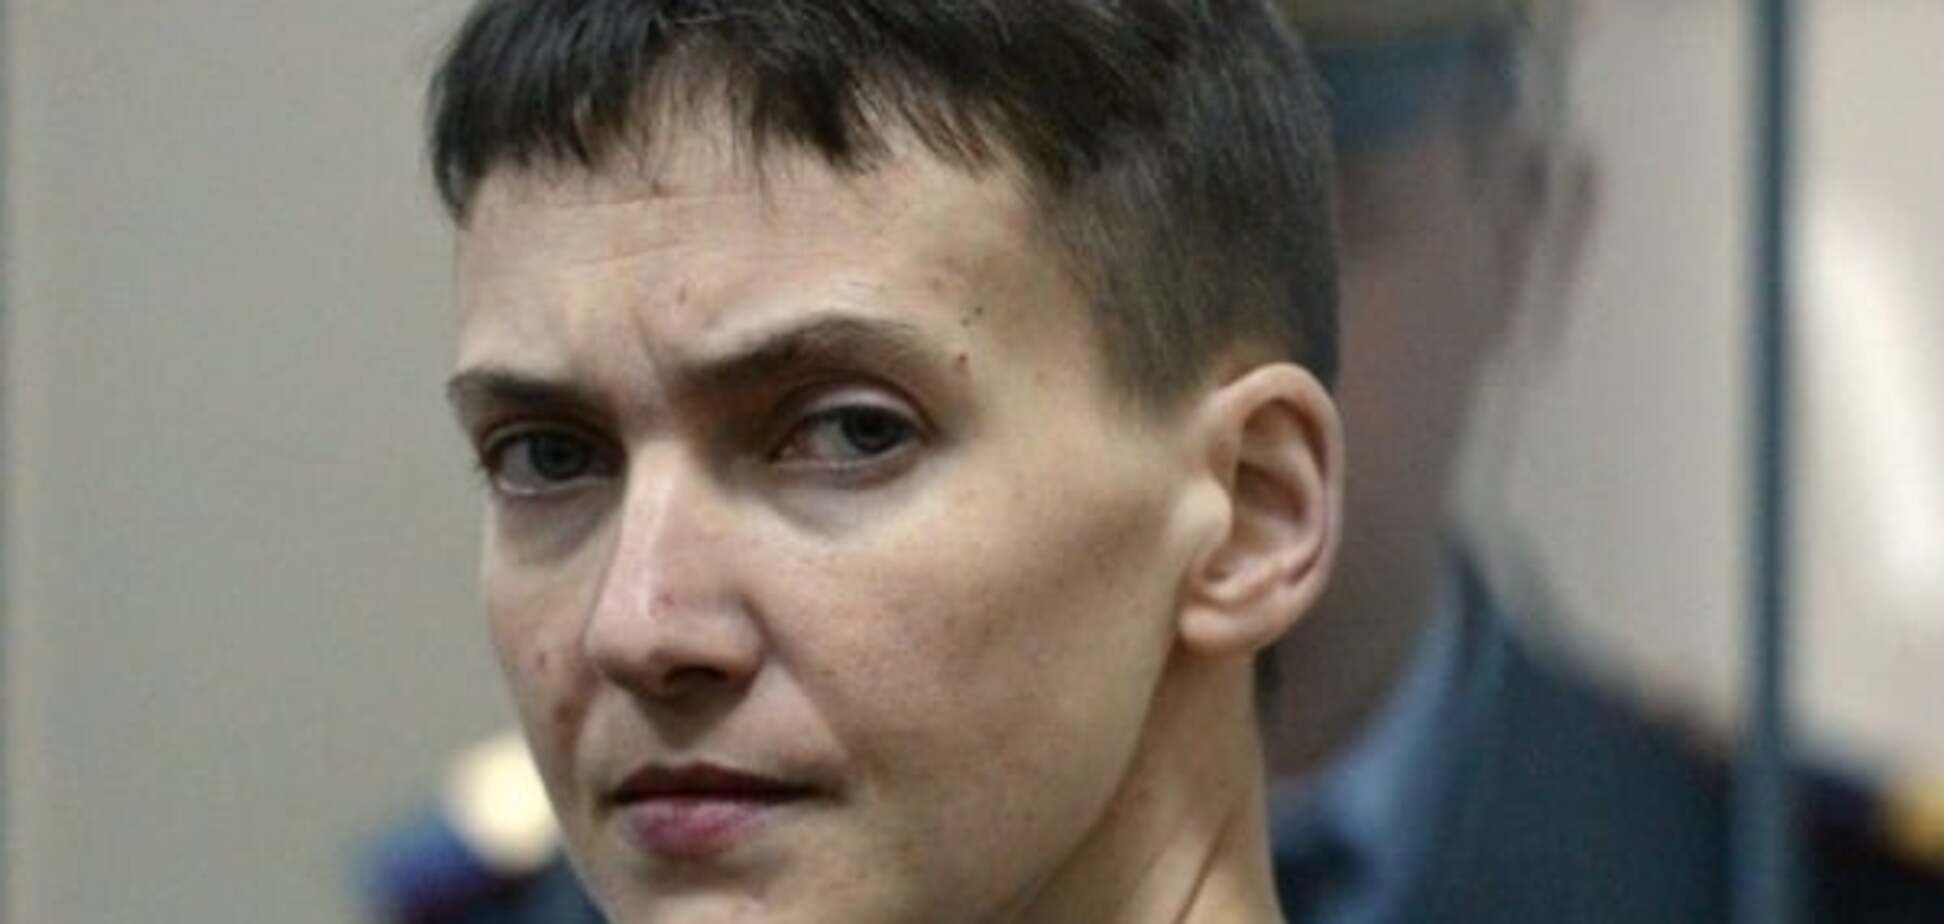 Час спливає: здоров'я і життя Савченко тане на очах - адвокат